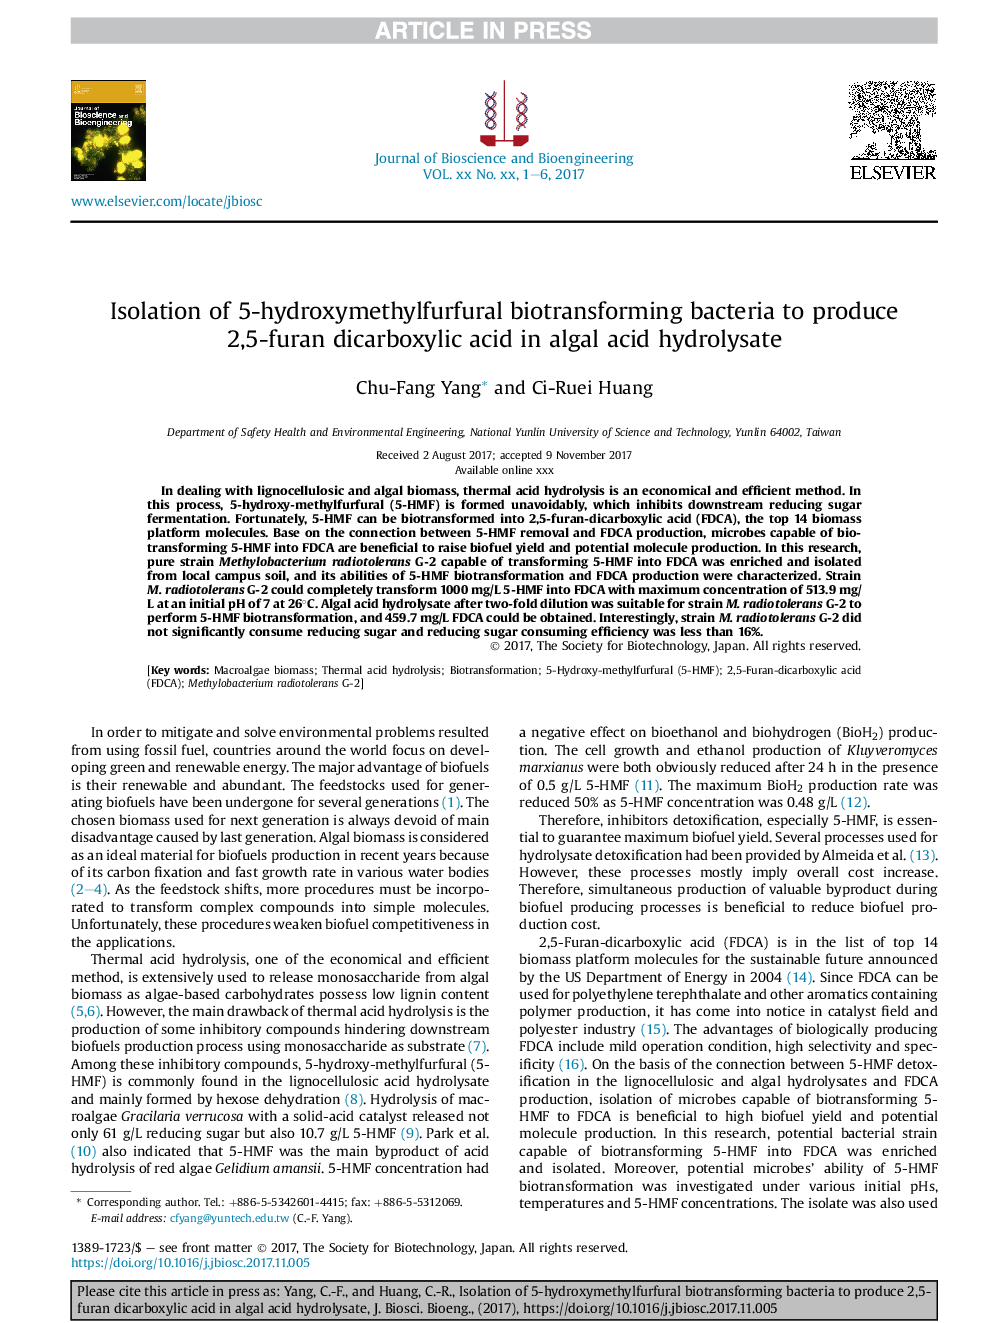 جداسازی باکتری های بیوتانسفریمر 5-هیدروکسی متیل فورفورال برای تولید 2،5-فوران دیکربوکسیلیک اسید در هیدرولیزات اسید جلبک 